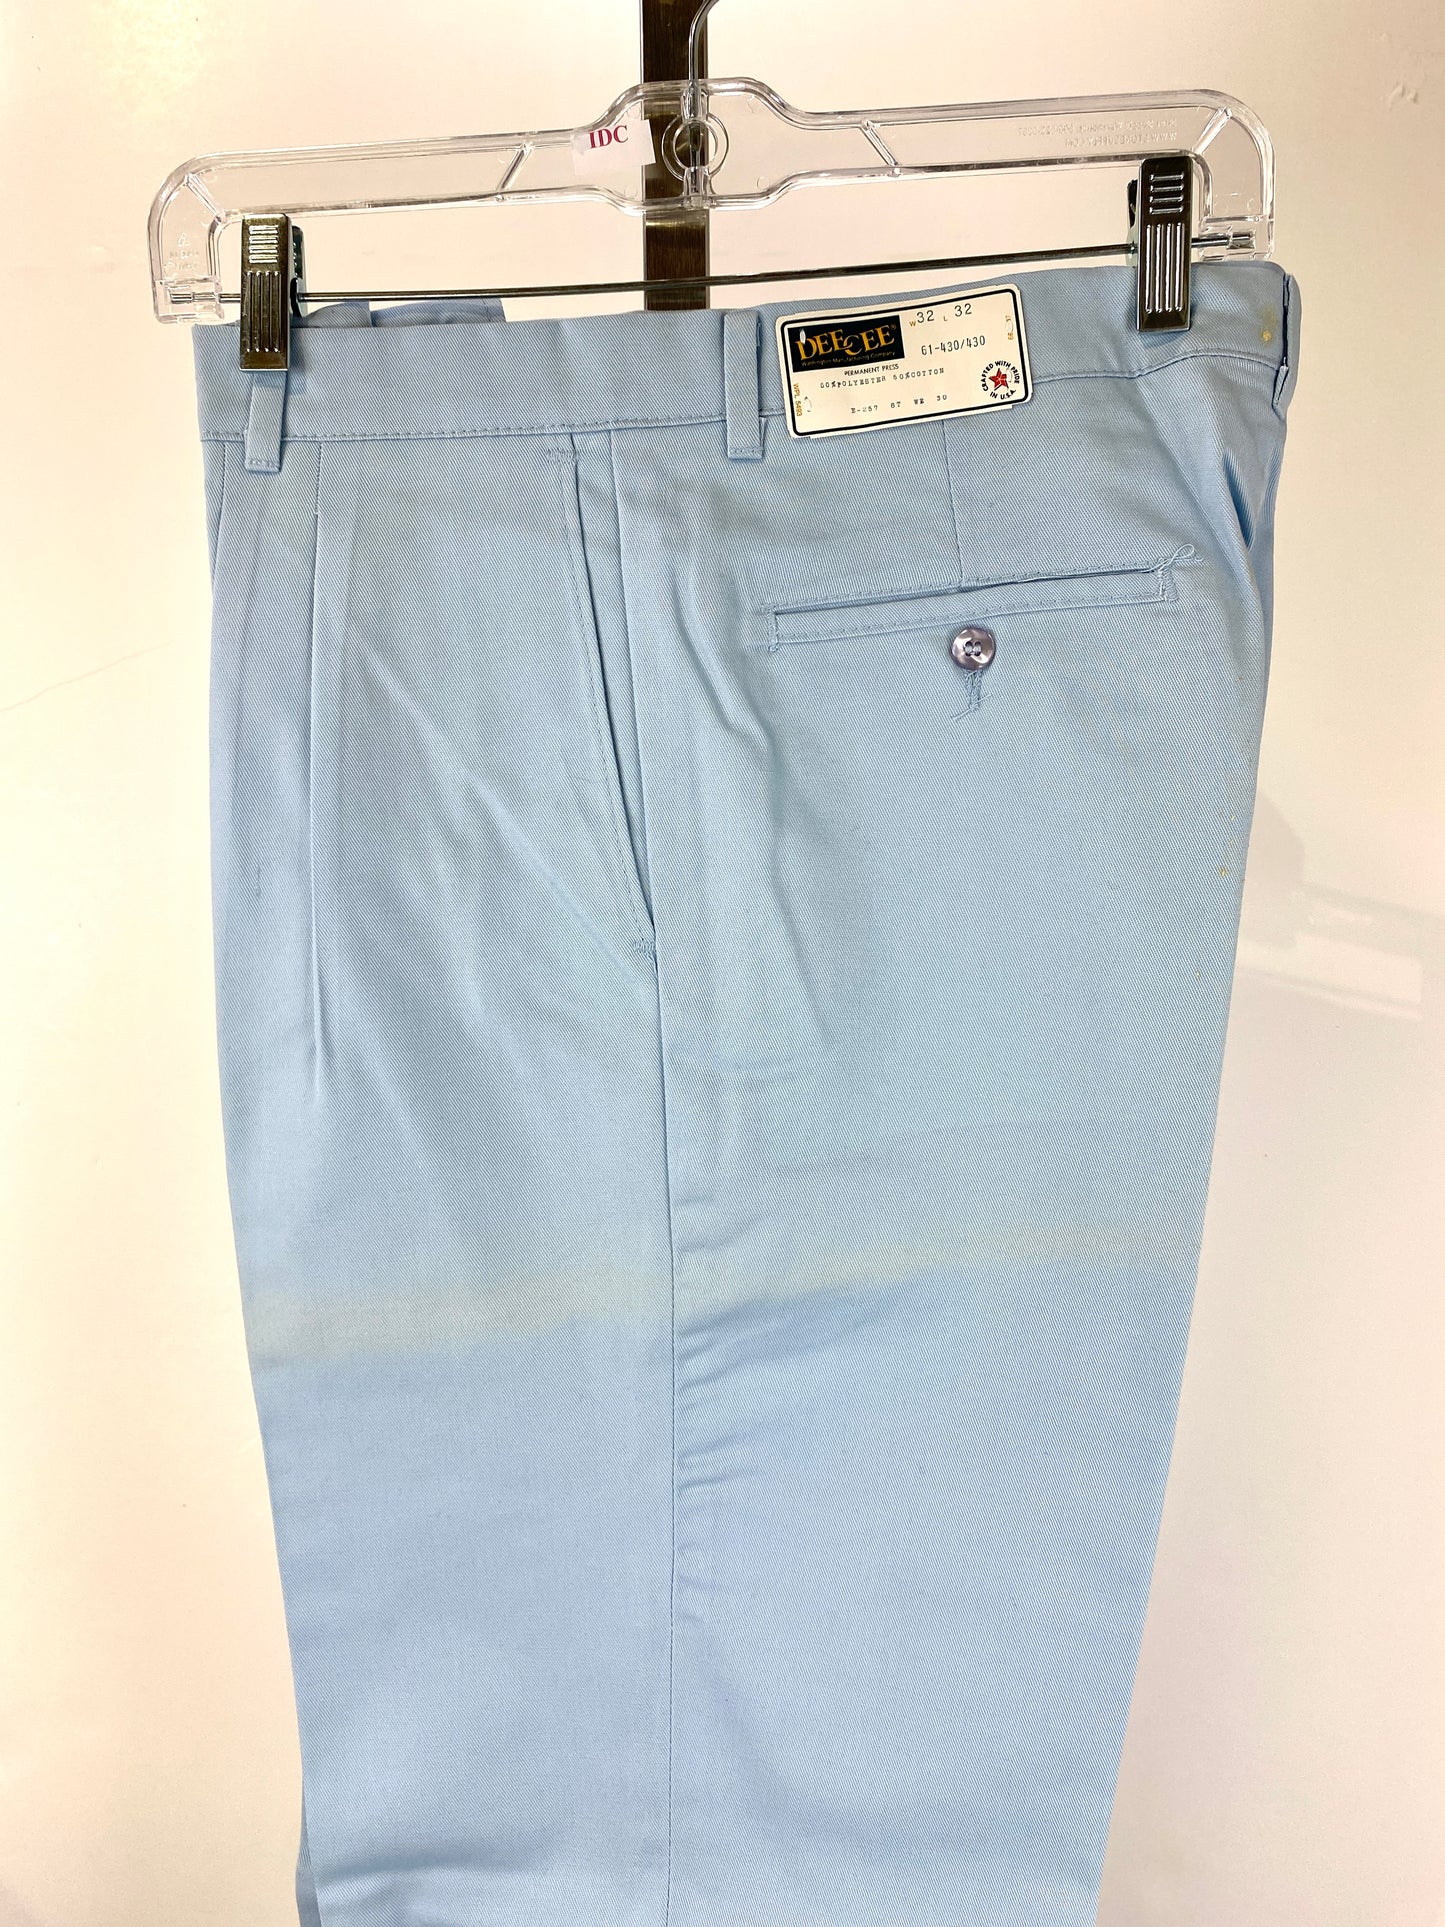 Vintage 1970s Deadstock Straight-Leg Polycotton Trousers, Men's Blue 'Dee Cee' Slacks, NOS